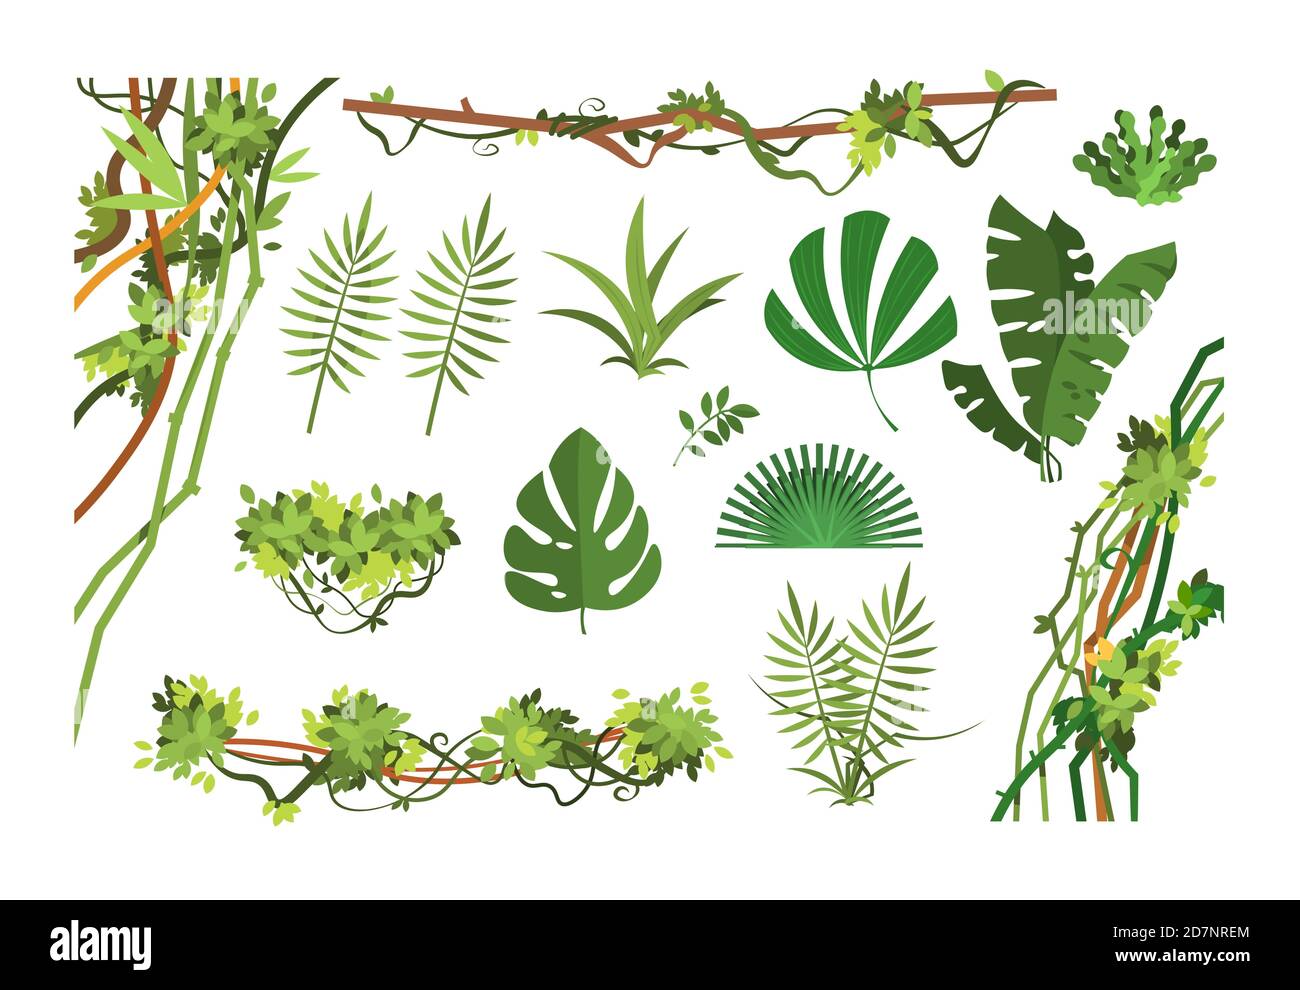 La vid de la selva. Dibujos animados hojas de selva tropical y lianas  plantas de crecimiento excesivo. Conjunto vectorial aislado de plantas  exóticas de la selva, hoja de palma y la rama